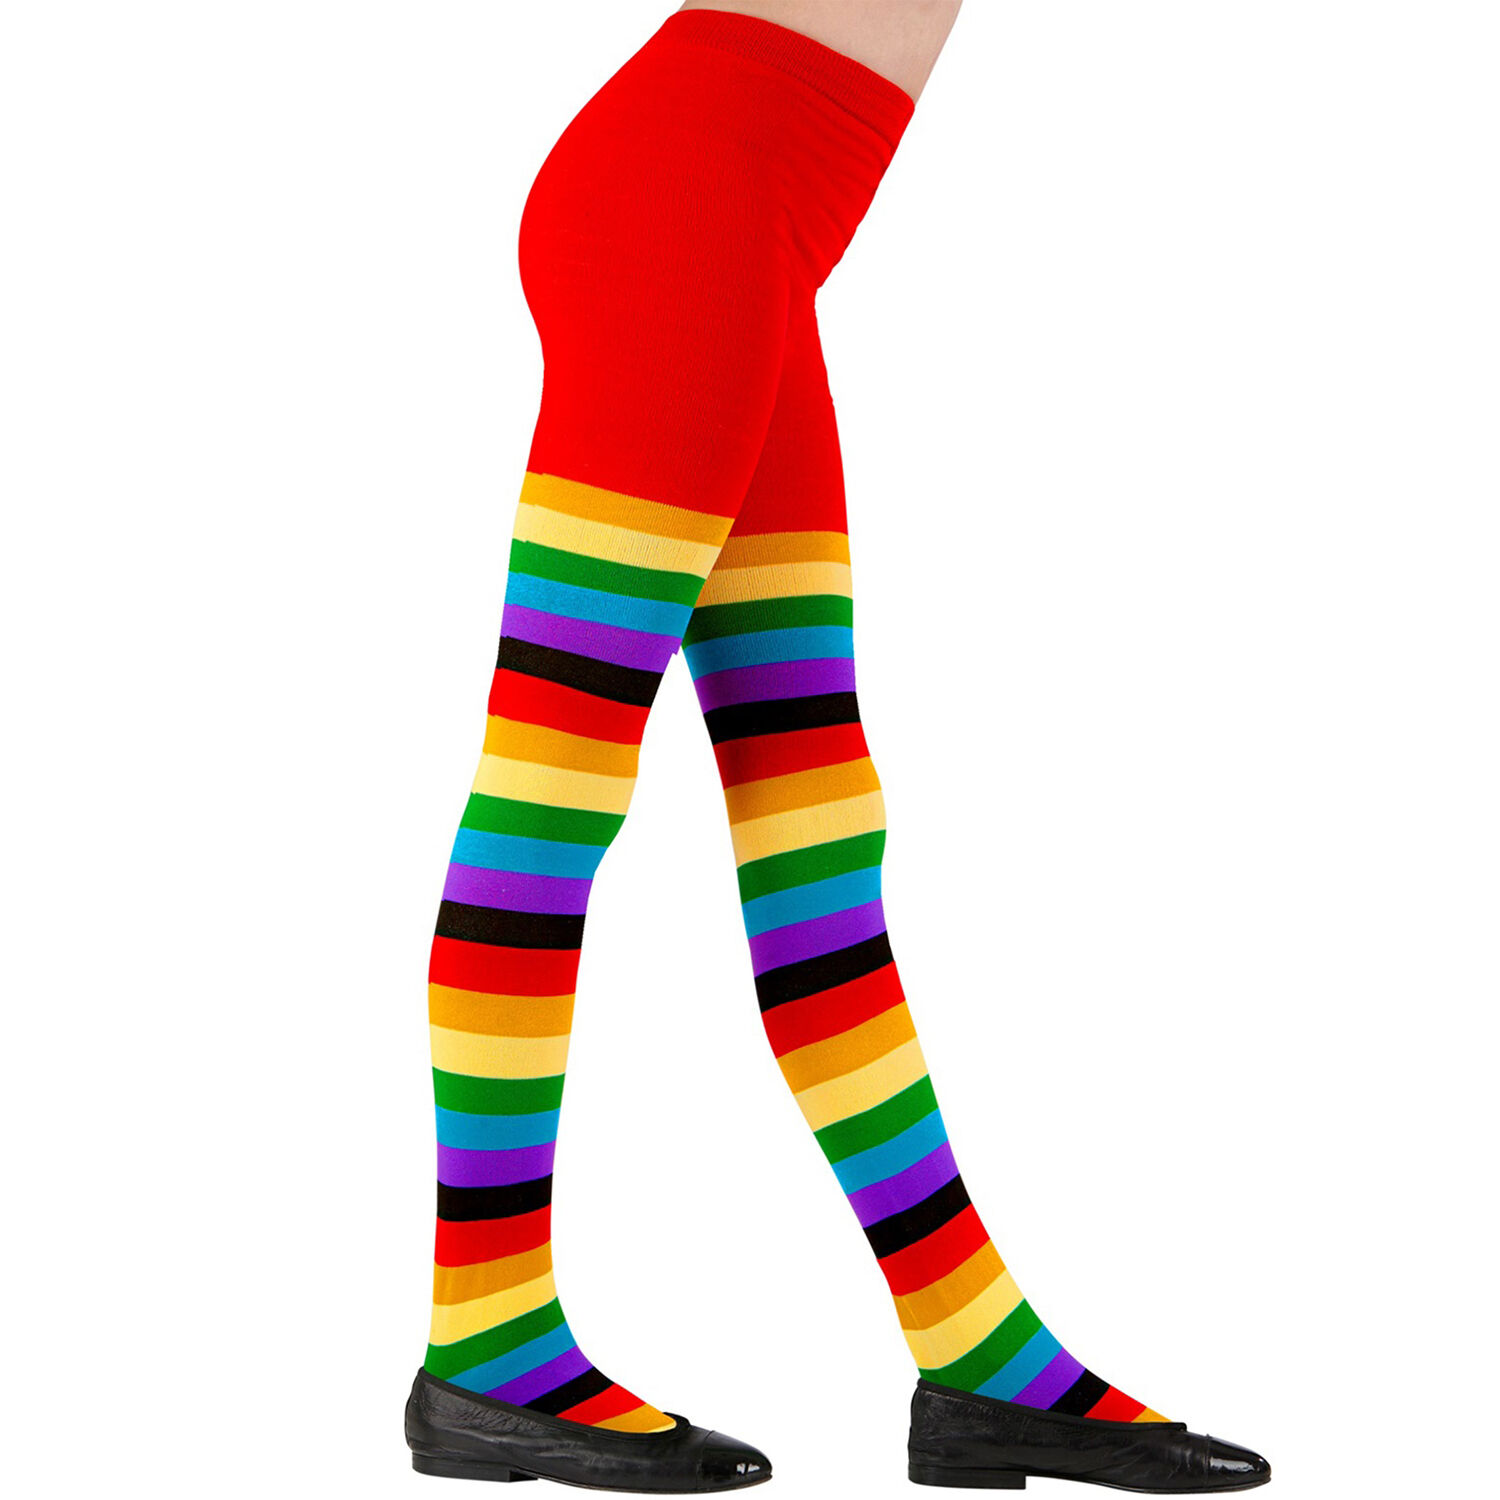 NEU Kinderstrumpfhose Regenbogen Bunt für Clown & Co., 75 DEN, Größe Alter 4-6 Jahre